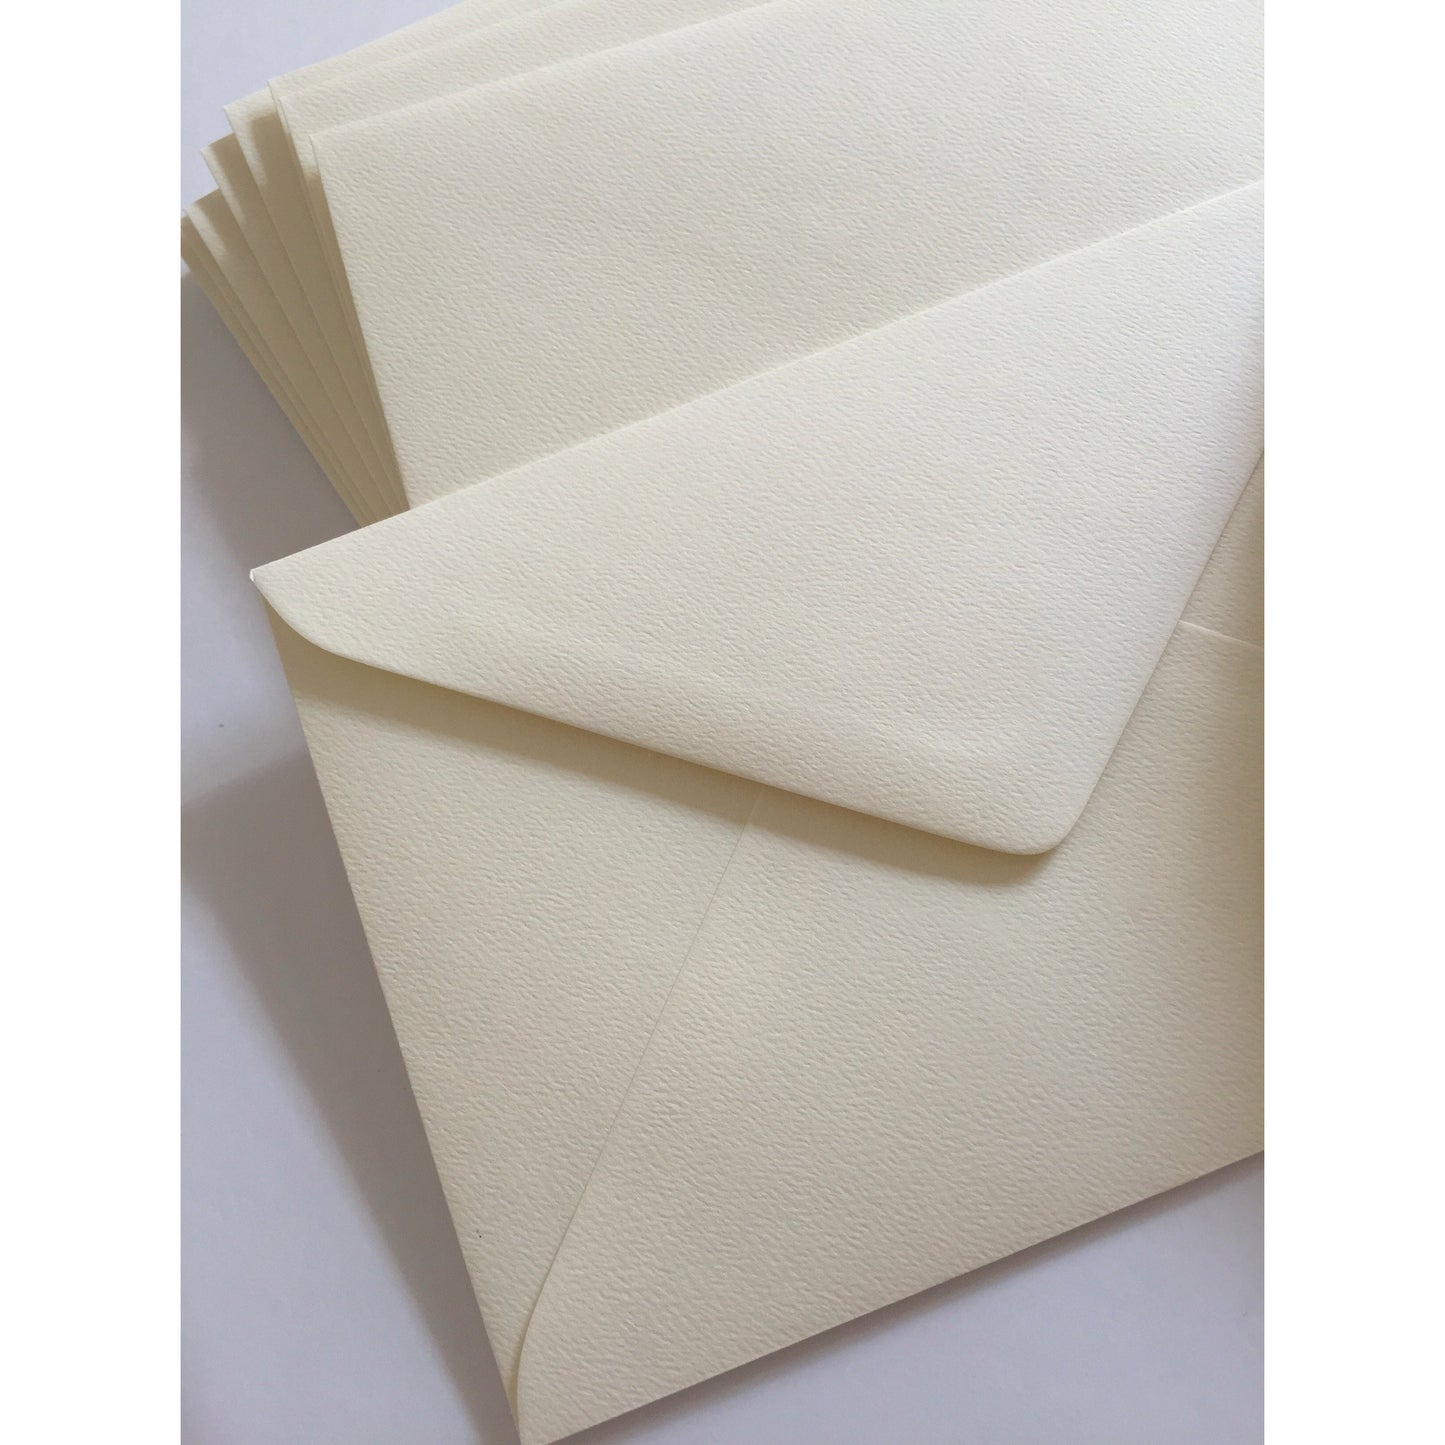 Light Textured Via Felt Envelopes Pack of 20 White or Cream Choose Size & Colour